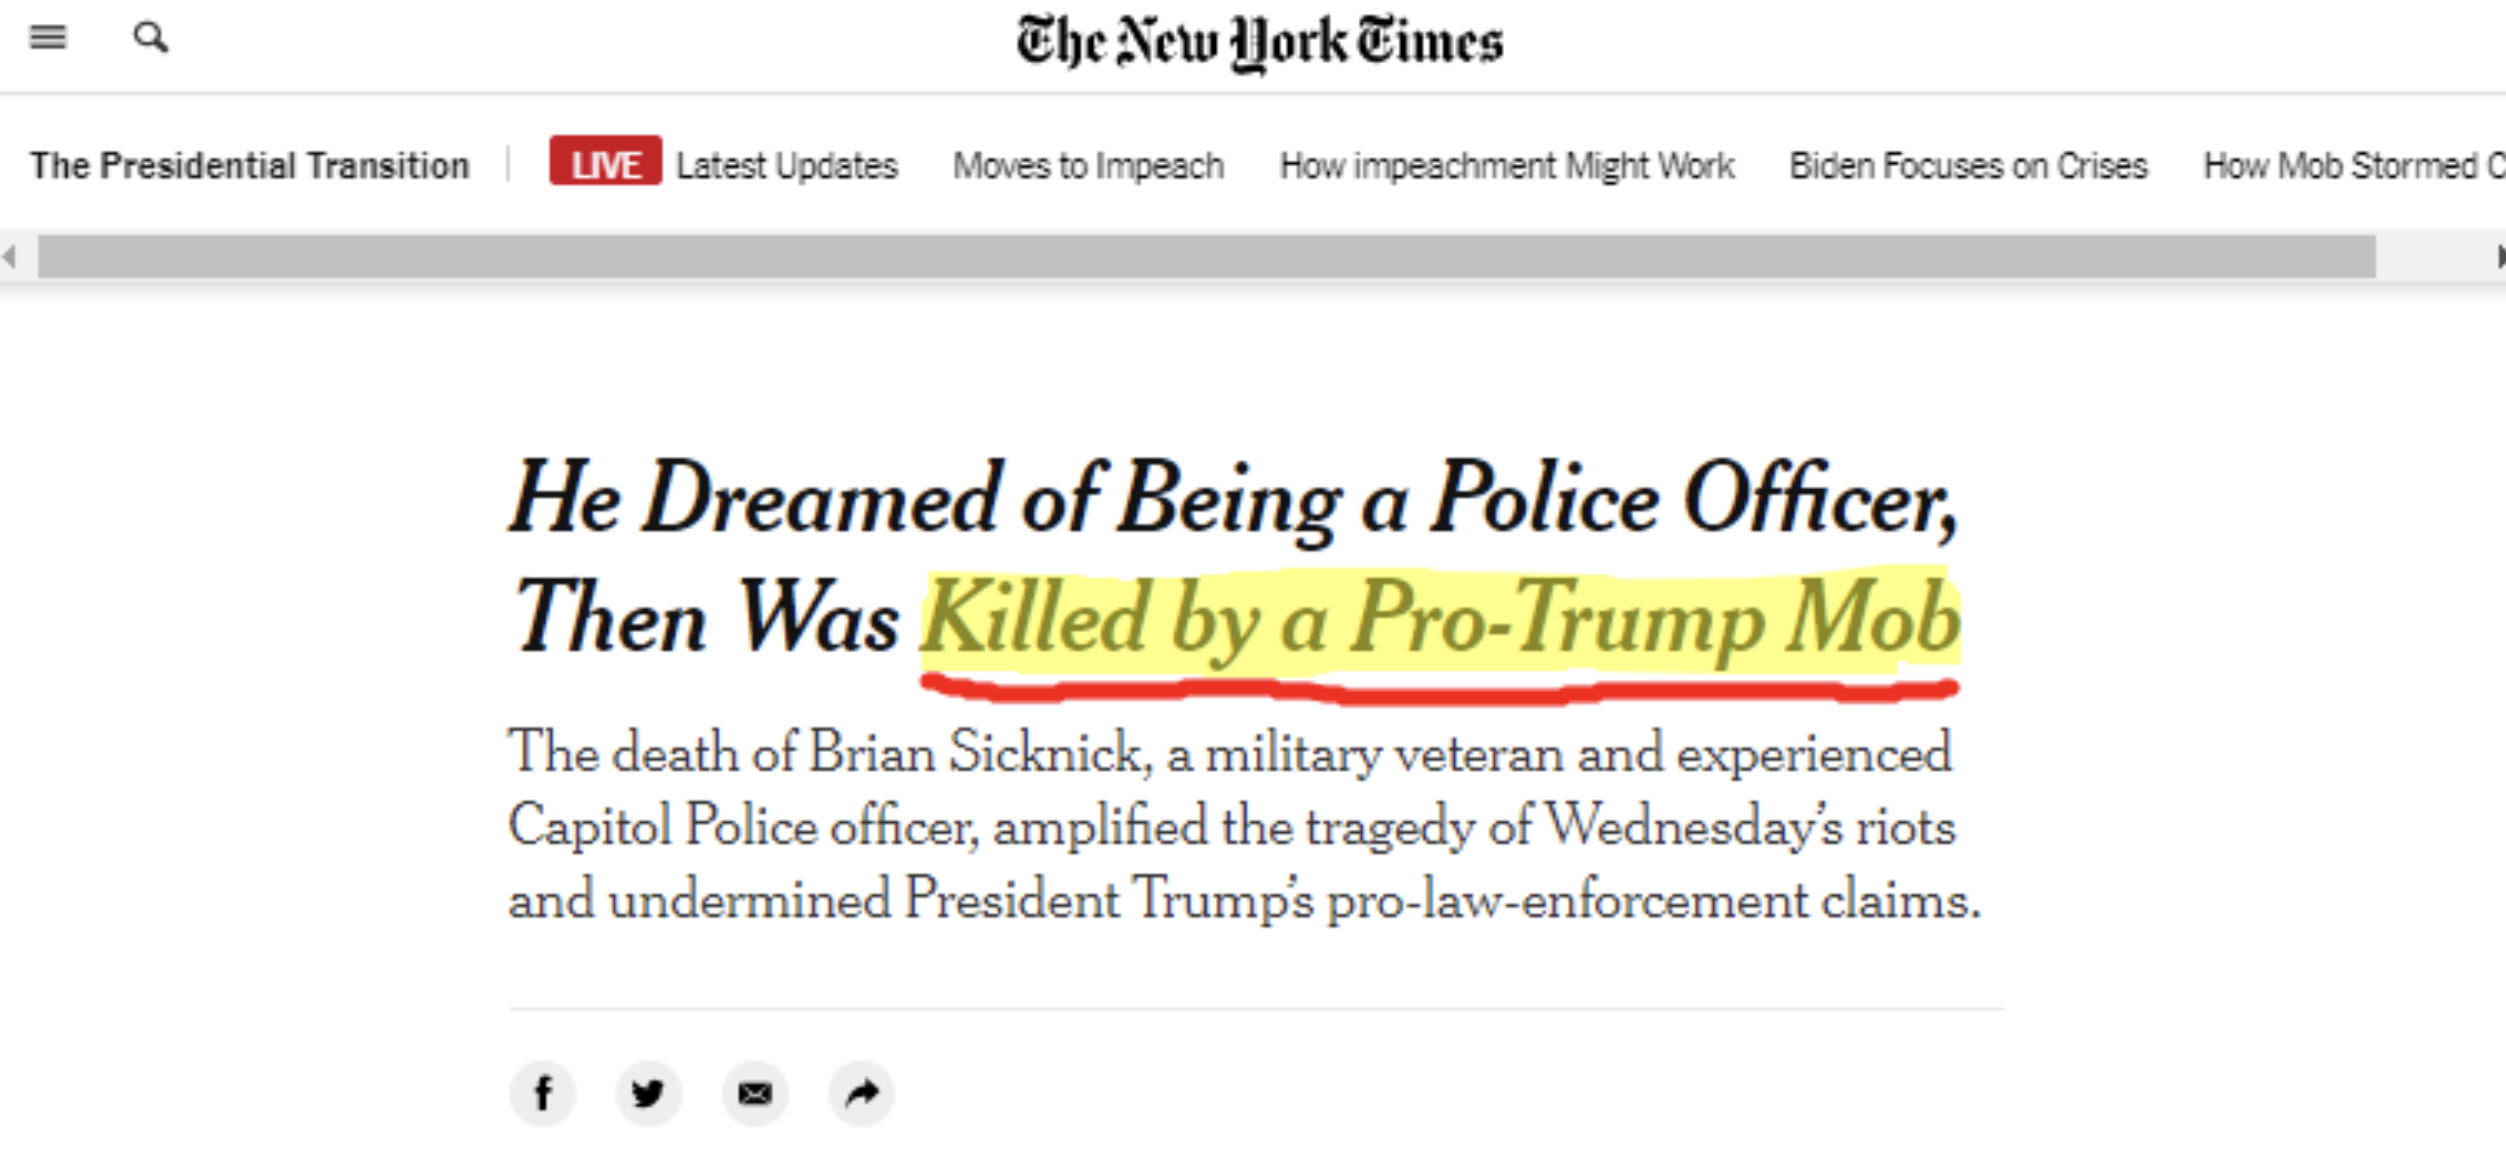 Brian Sicknick killed by Pro-Trump Mob